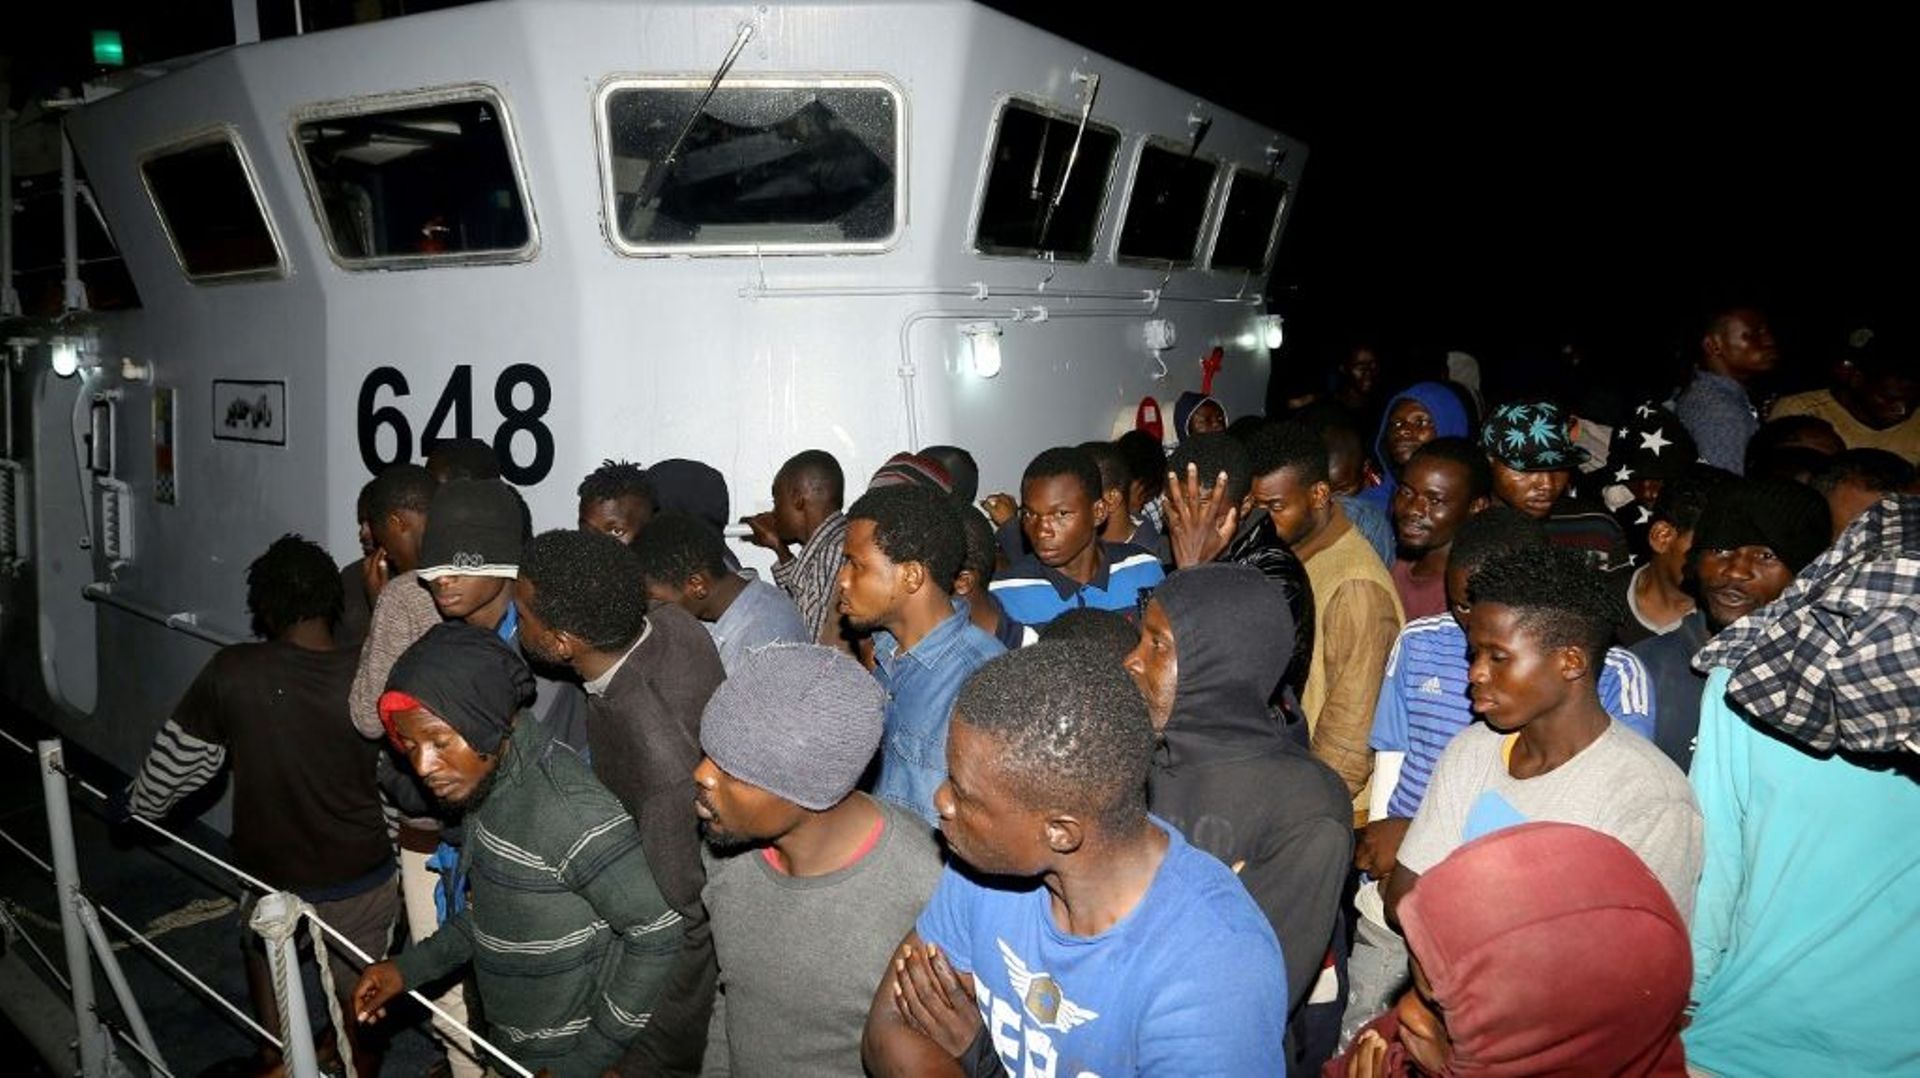 Des migrants arrivent à une base navale après avoir été secourus en mer, le 24 juin 2018 à Tripoli, en Libye